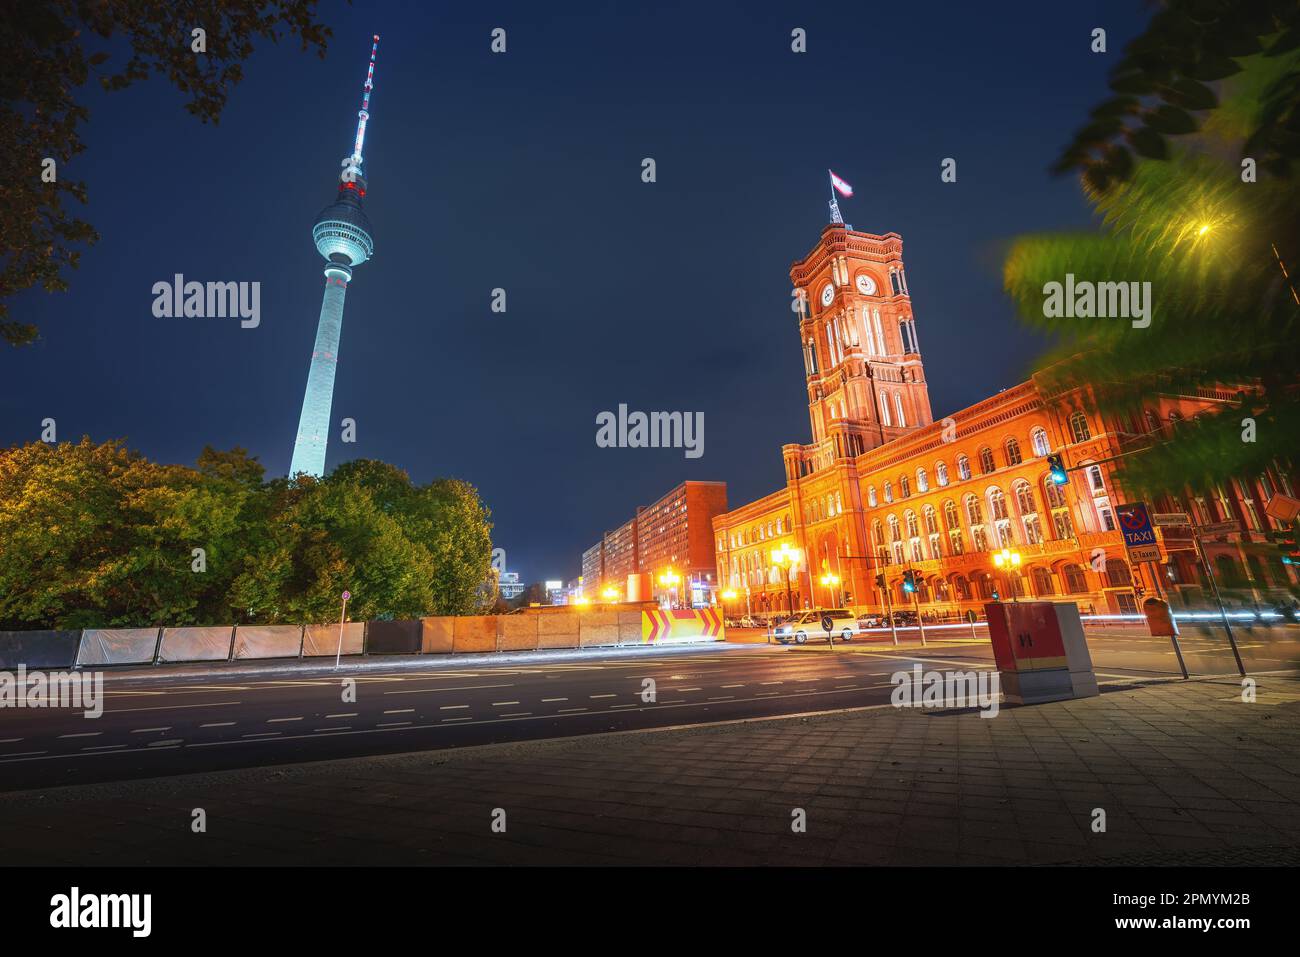 Hôtel de ville de Berlin (Rotes Rathaus) et tour de télévision (Fernsehturm) la nuit - Berlin, Allemagne Banque D'Images